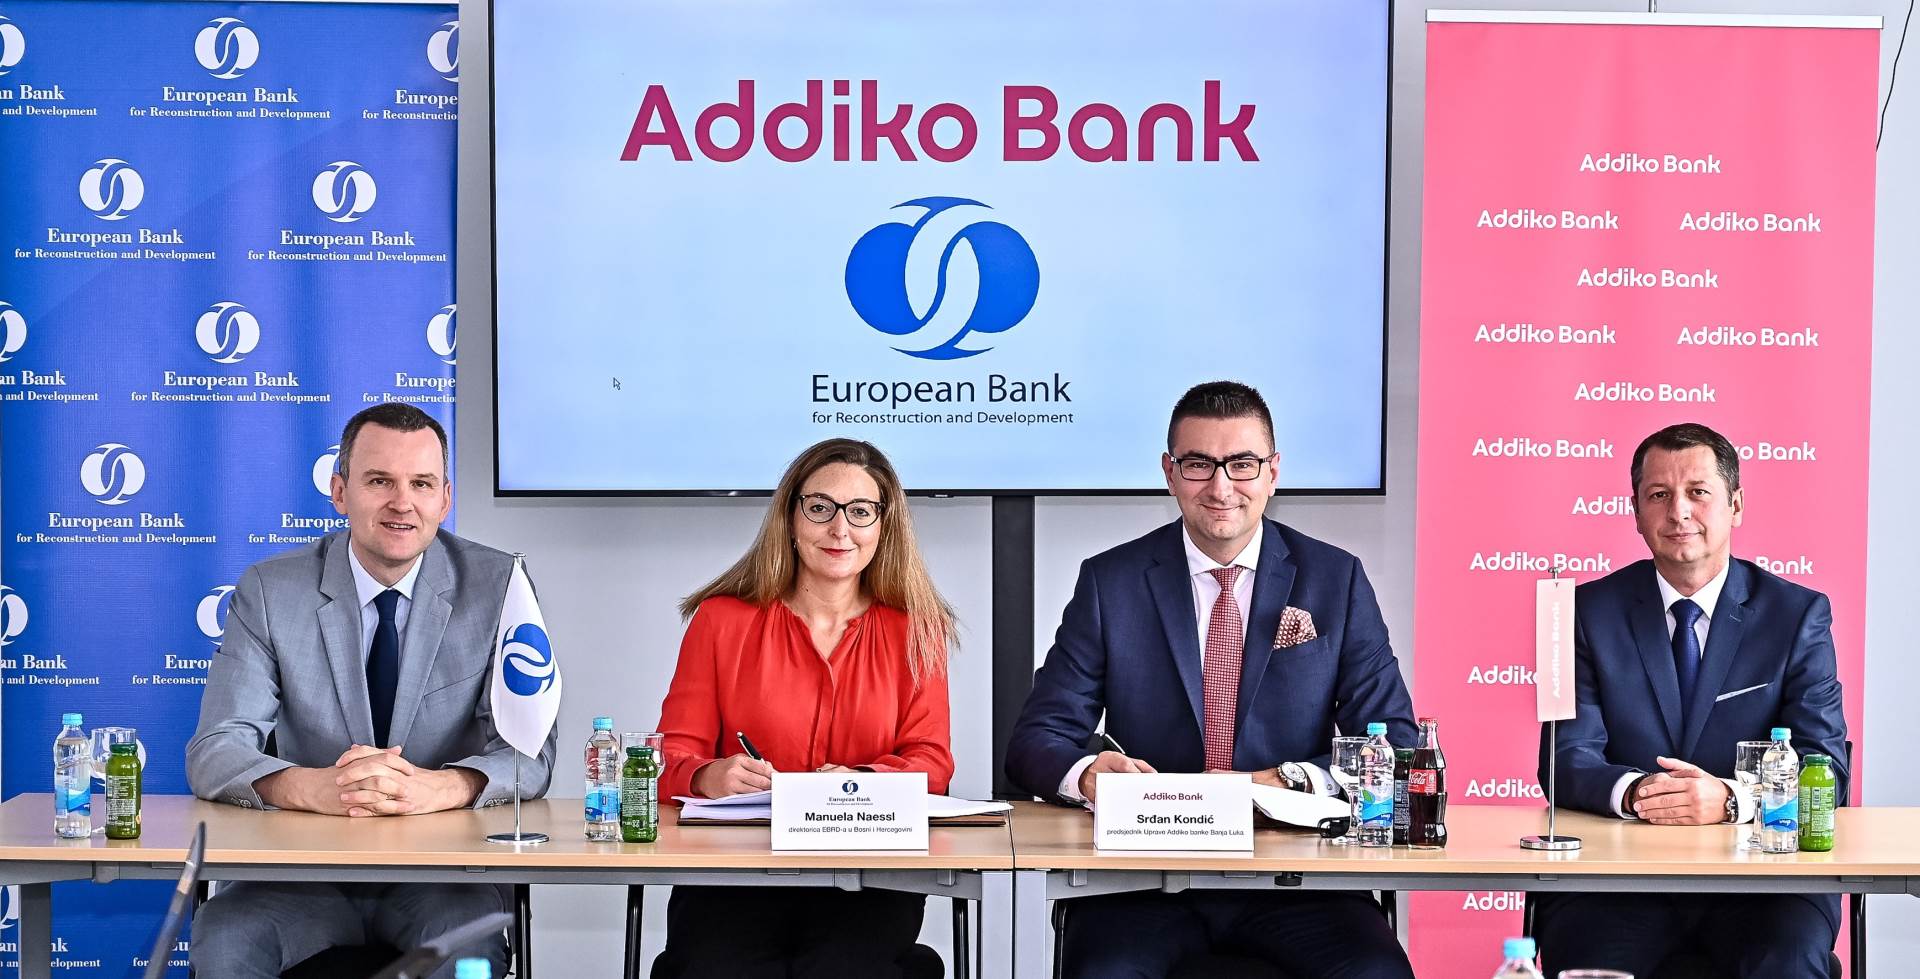  Saradnja Addiko banka i EBRD 